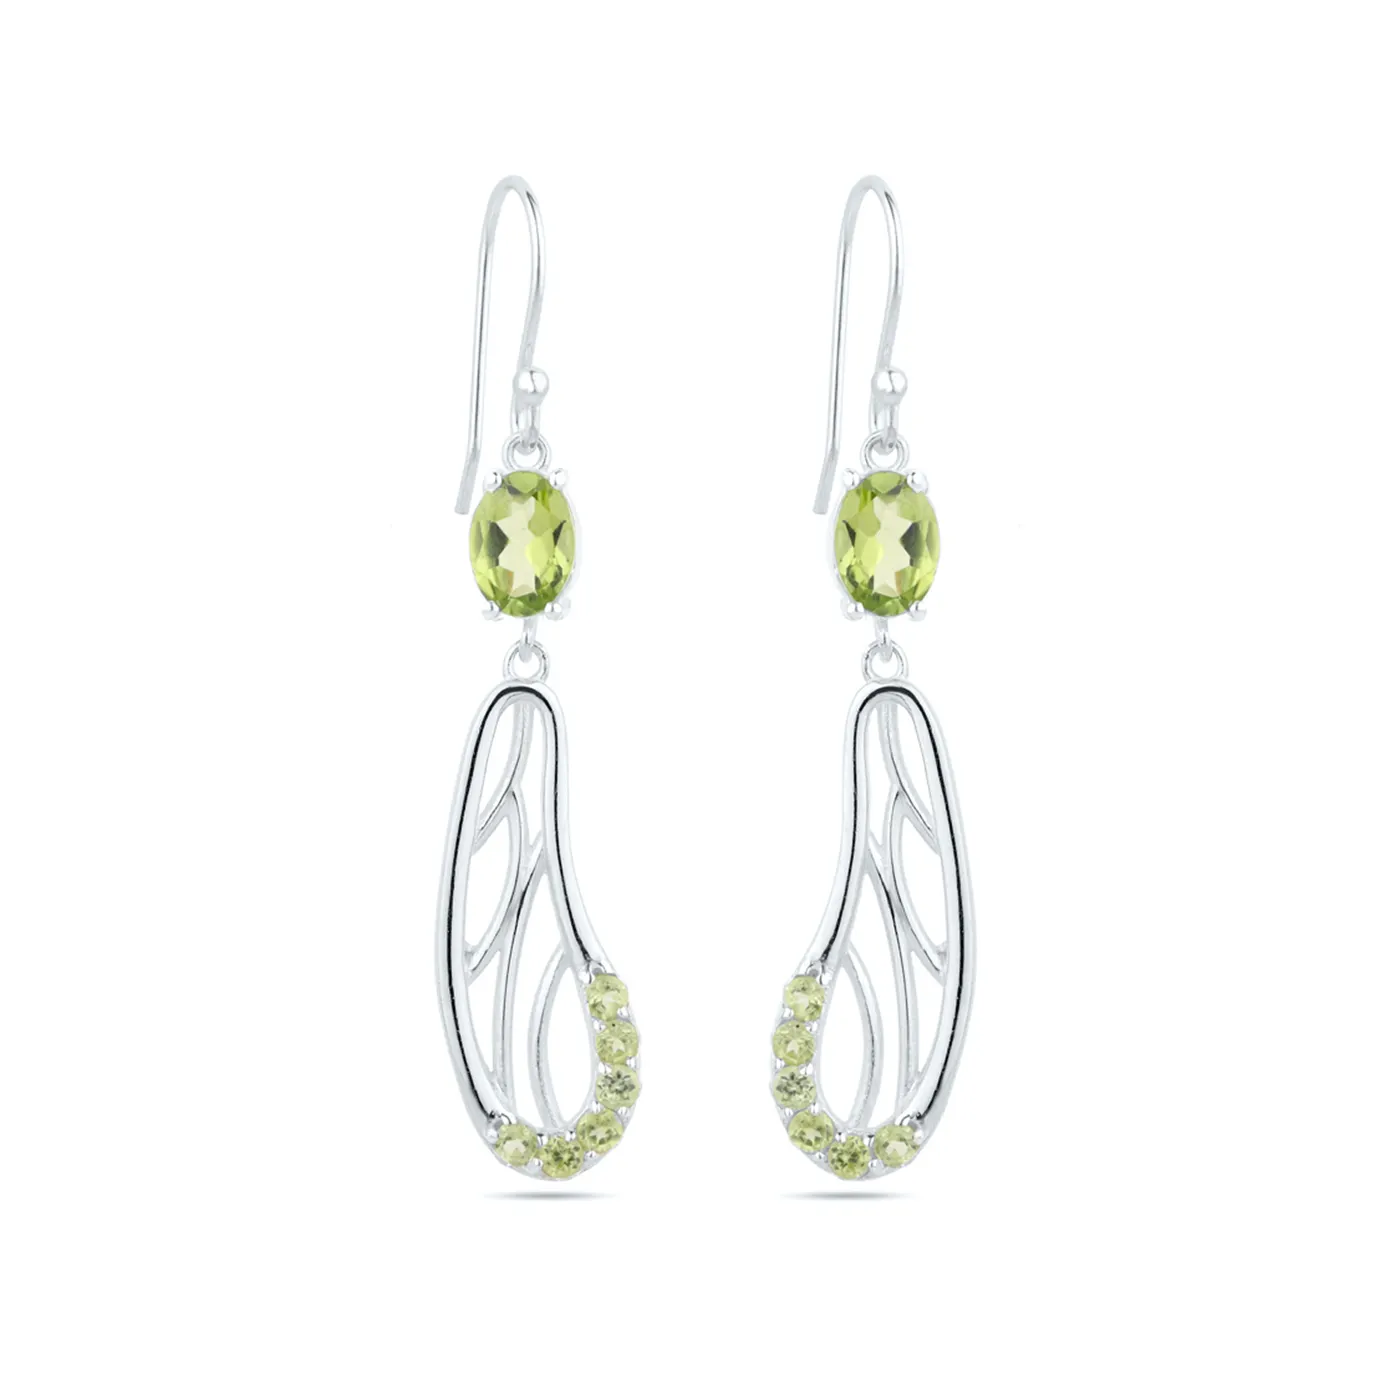 Donne squisita moda elegante naturale Peridot gemma 925 solido in argento Sterling classico gancio orecchini accessori per le donne